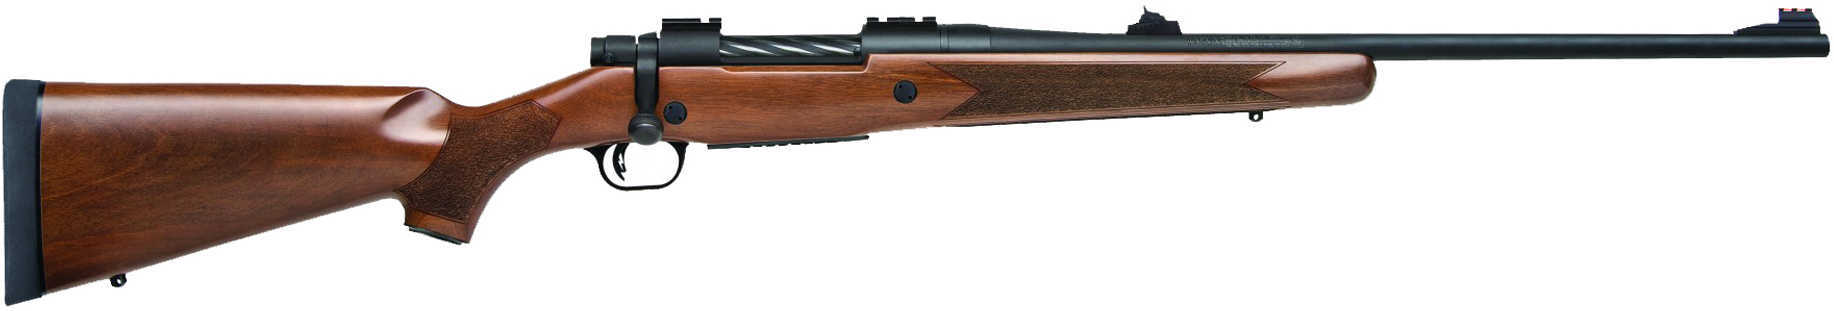 Mossberg Patriot 375 Ruger 4 Round 22" Blued Barrel Walnut Stock Bolt Action Rifle